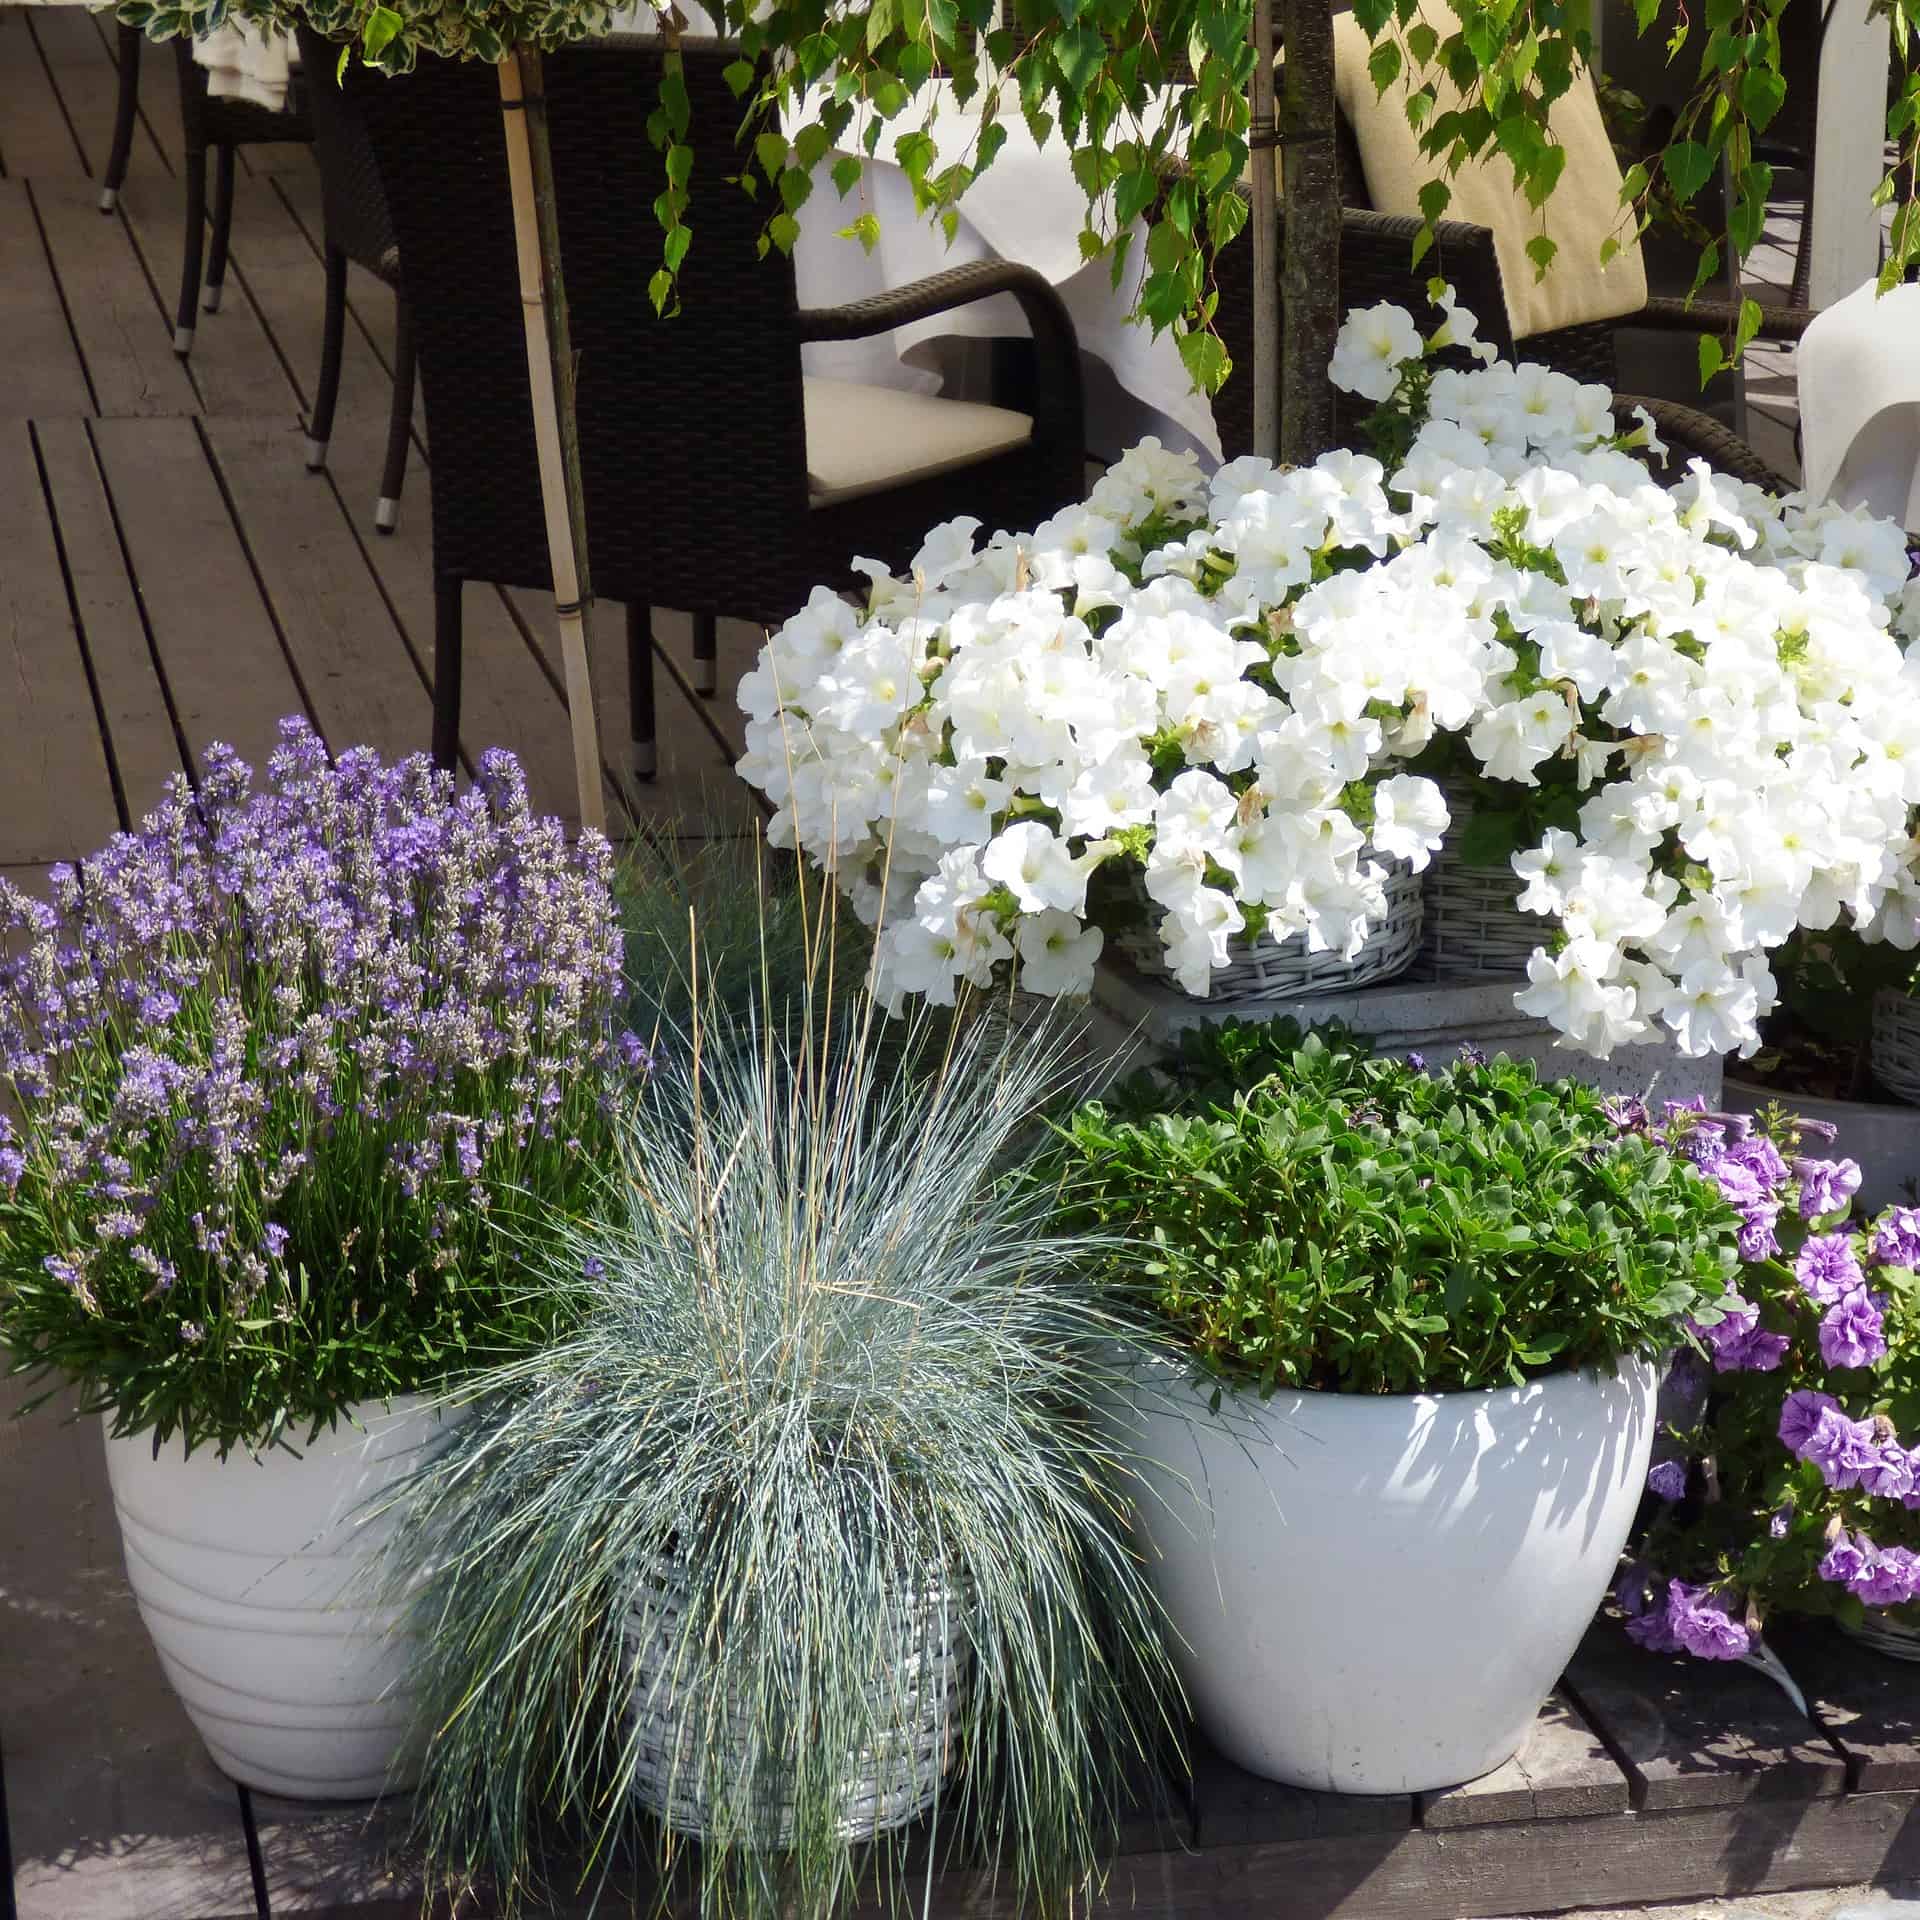 flowering plants in glazed terracotta pots